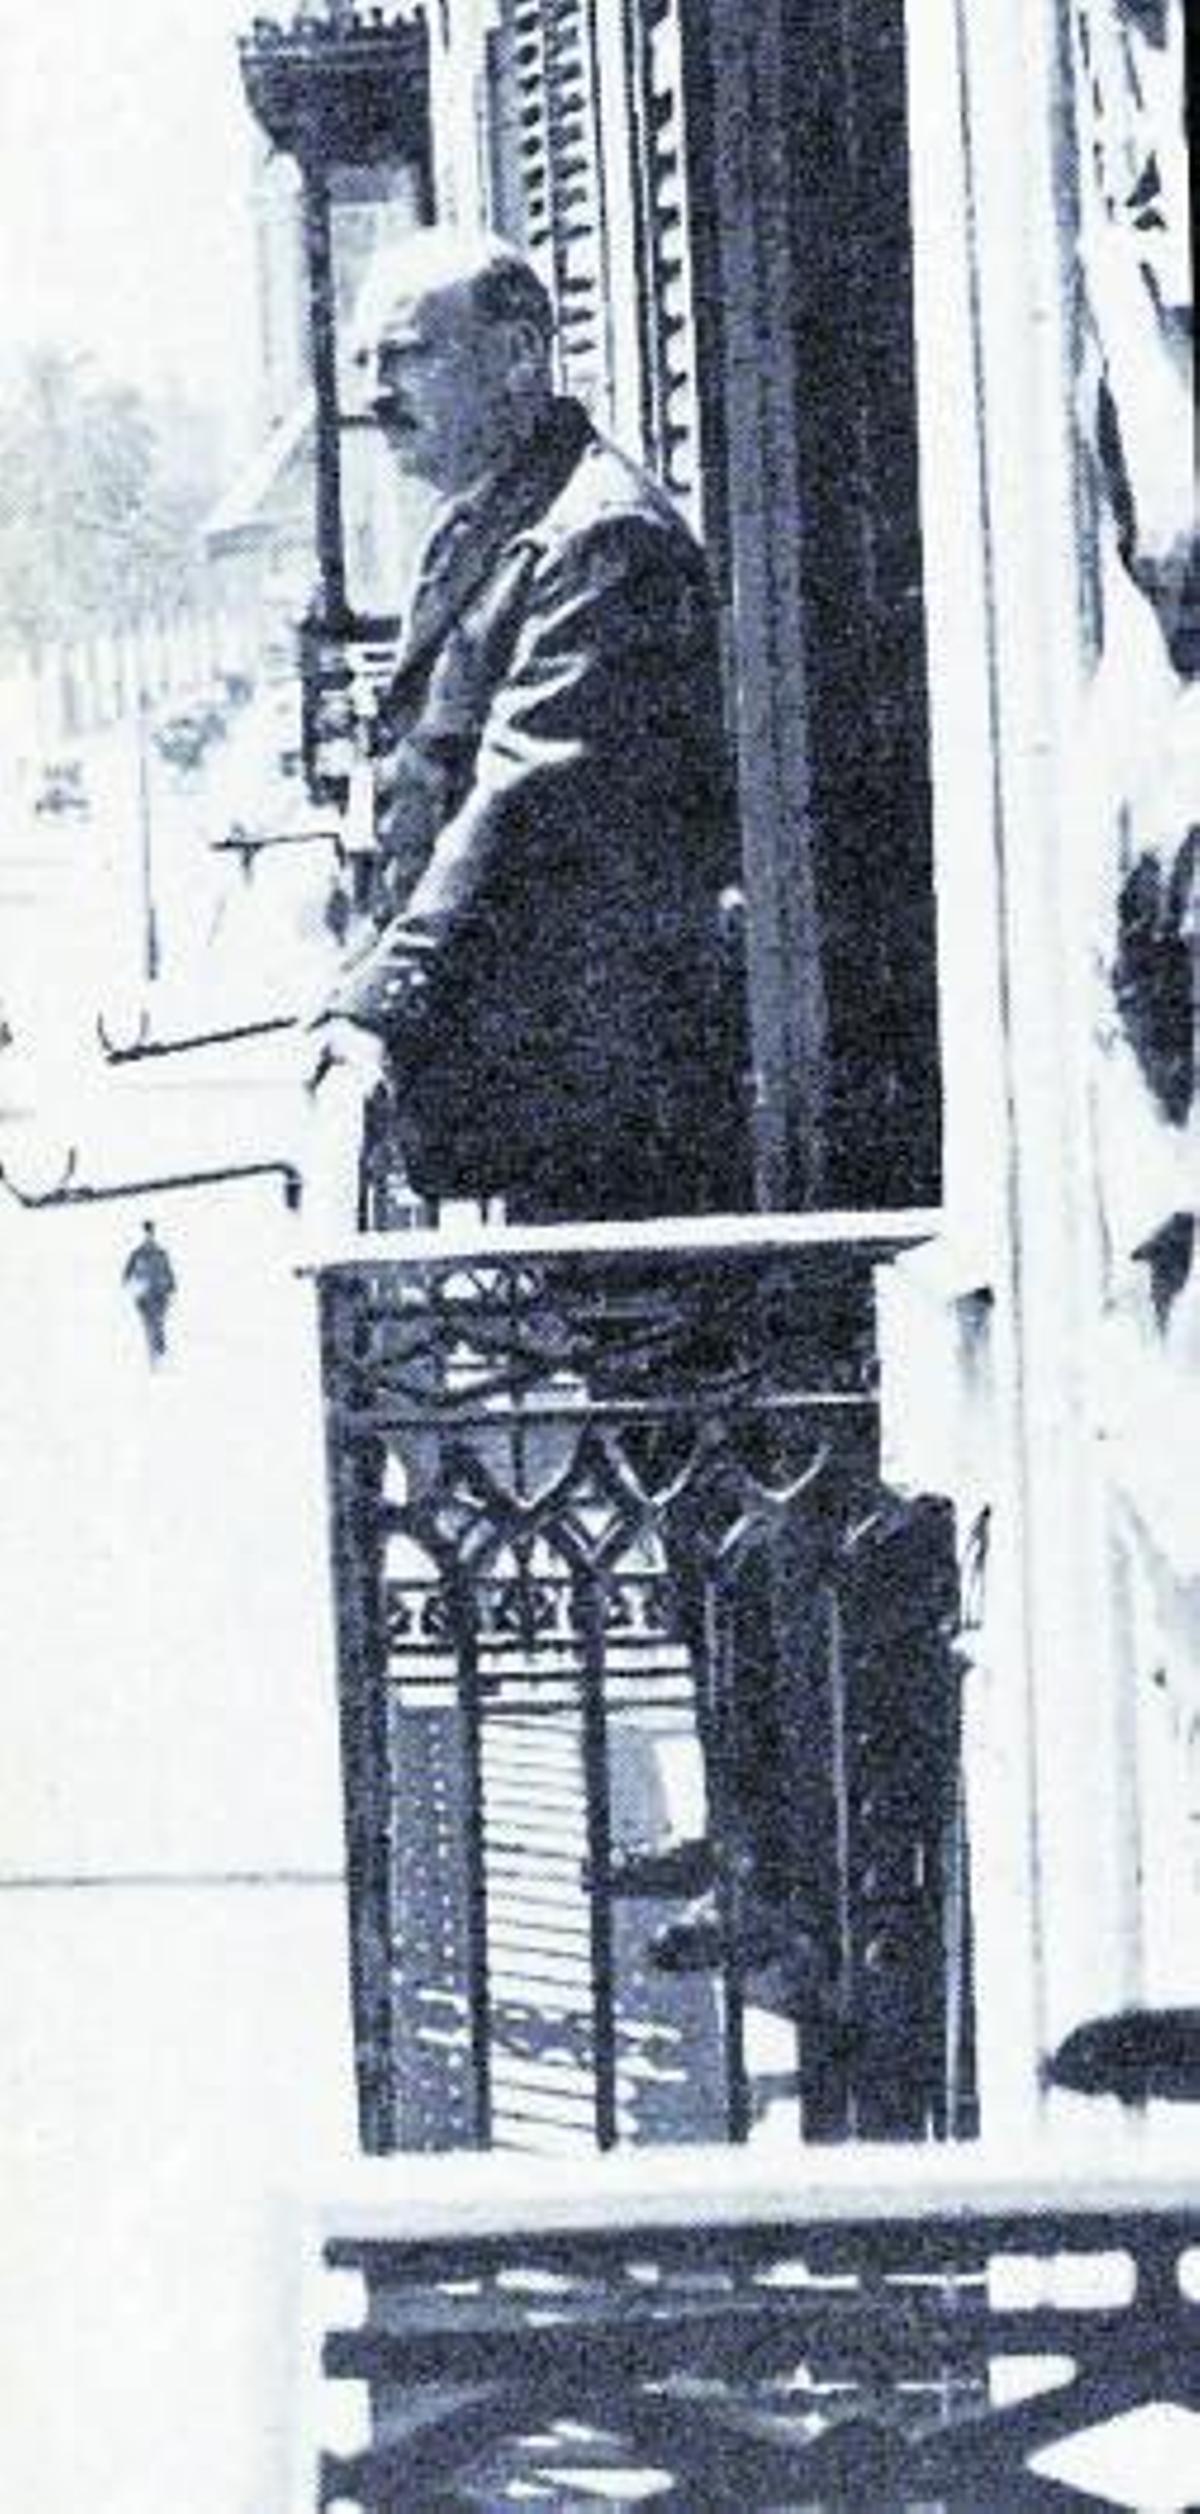 Primo de Rivera y el Directorio militar en 1923.